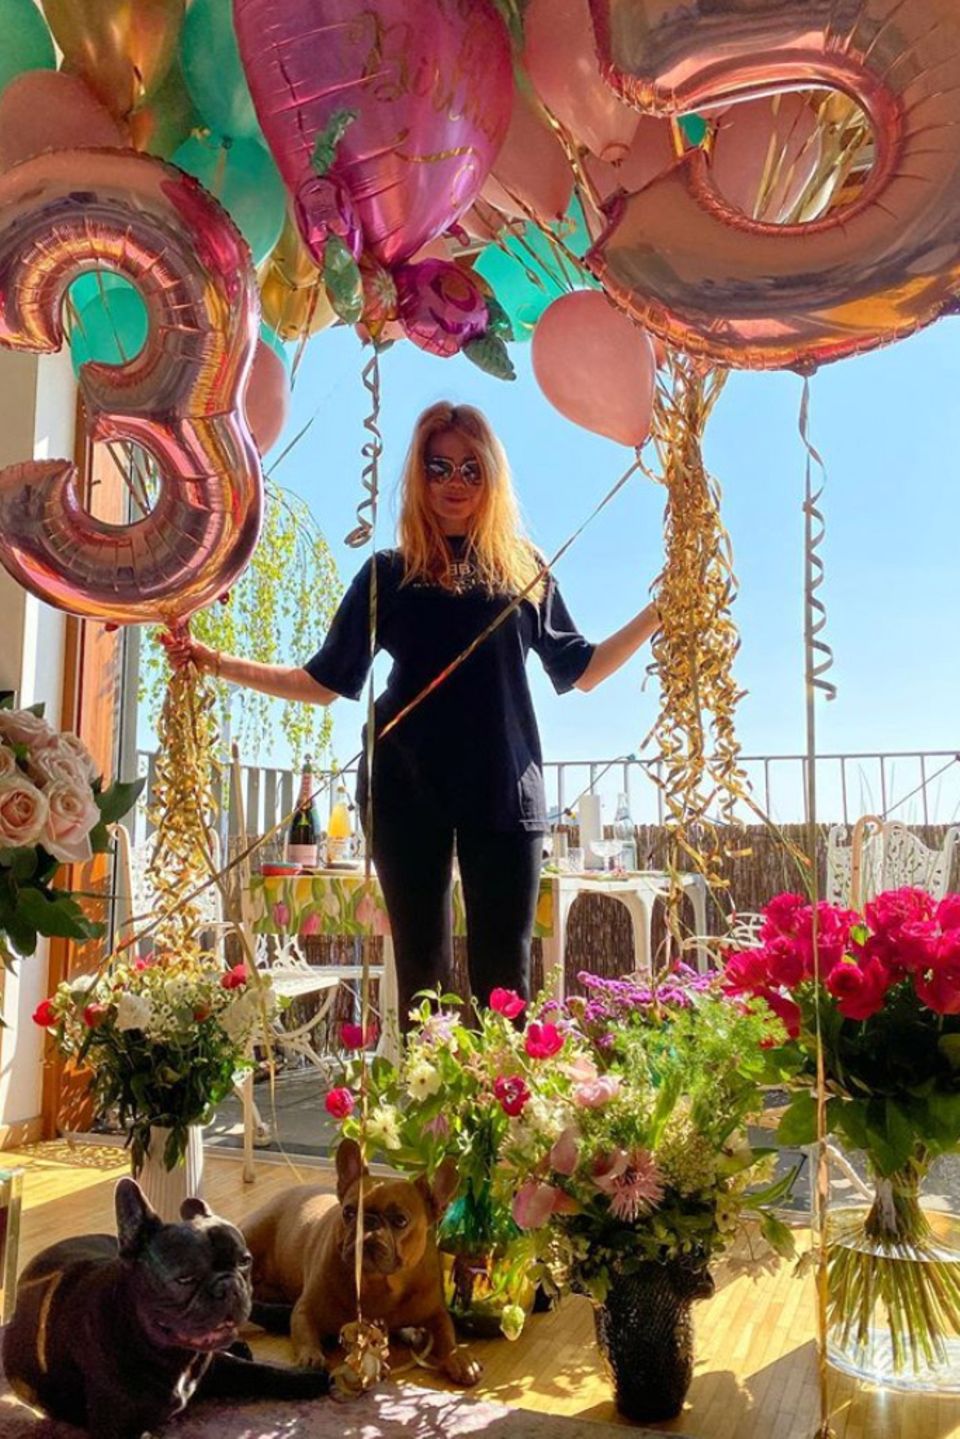 21. April 2020  Auch wenn Palina Rojinski ihren 35. Geburtstag zuhause verbringt, eine bunte Party wird es trotzdem! In einem Meer von Blumen und Ballons bedankt sich die strahlende Moderatorin für all die lieben Glückwünsche, die ihr zuteil werden.